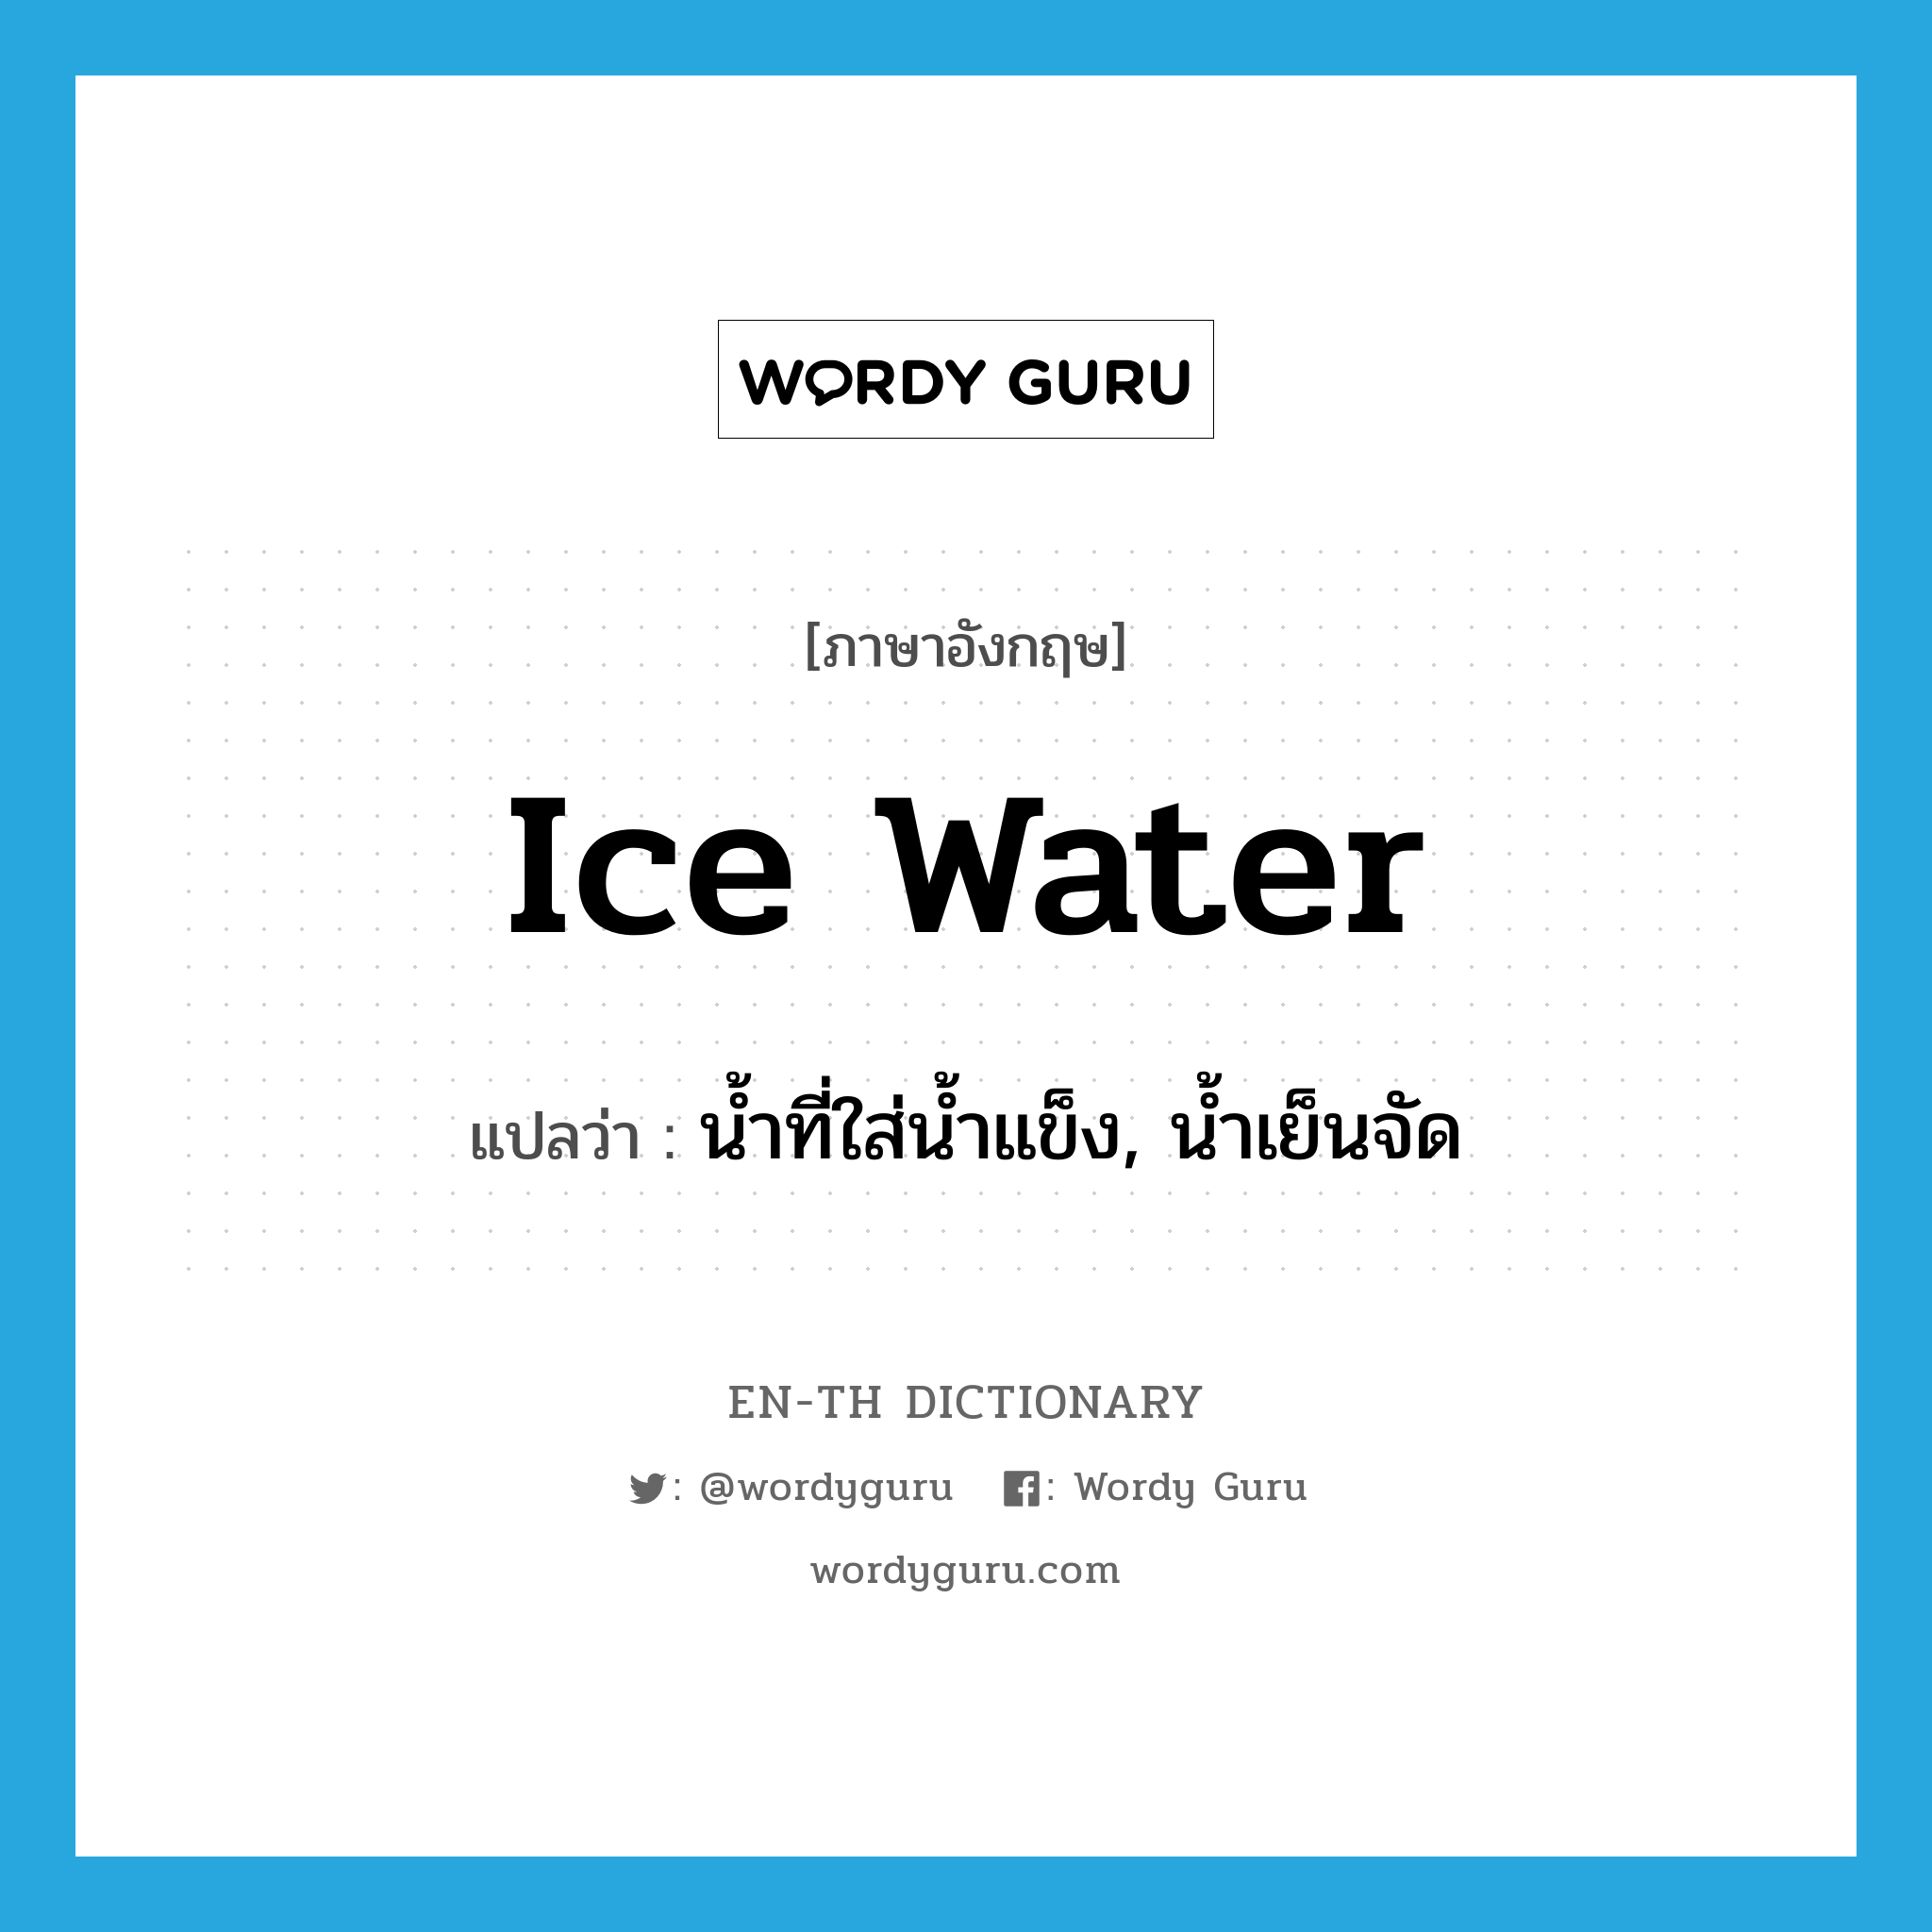 น้ำที่ใส่น้ำแข็ง, น้ำเย็นจัด ภาษาอังกฤษ?, คำศัพท์ภาษาอังกฤษ น้ำที่ใส่น้ำแข็ง, น้ำเย็นจัด แปลว่า ice water ประเภท N หมวด N